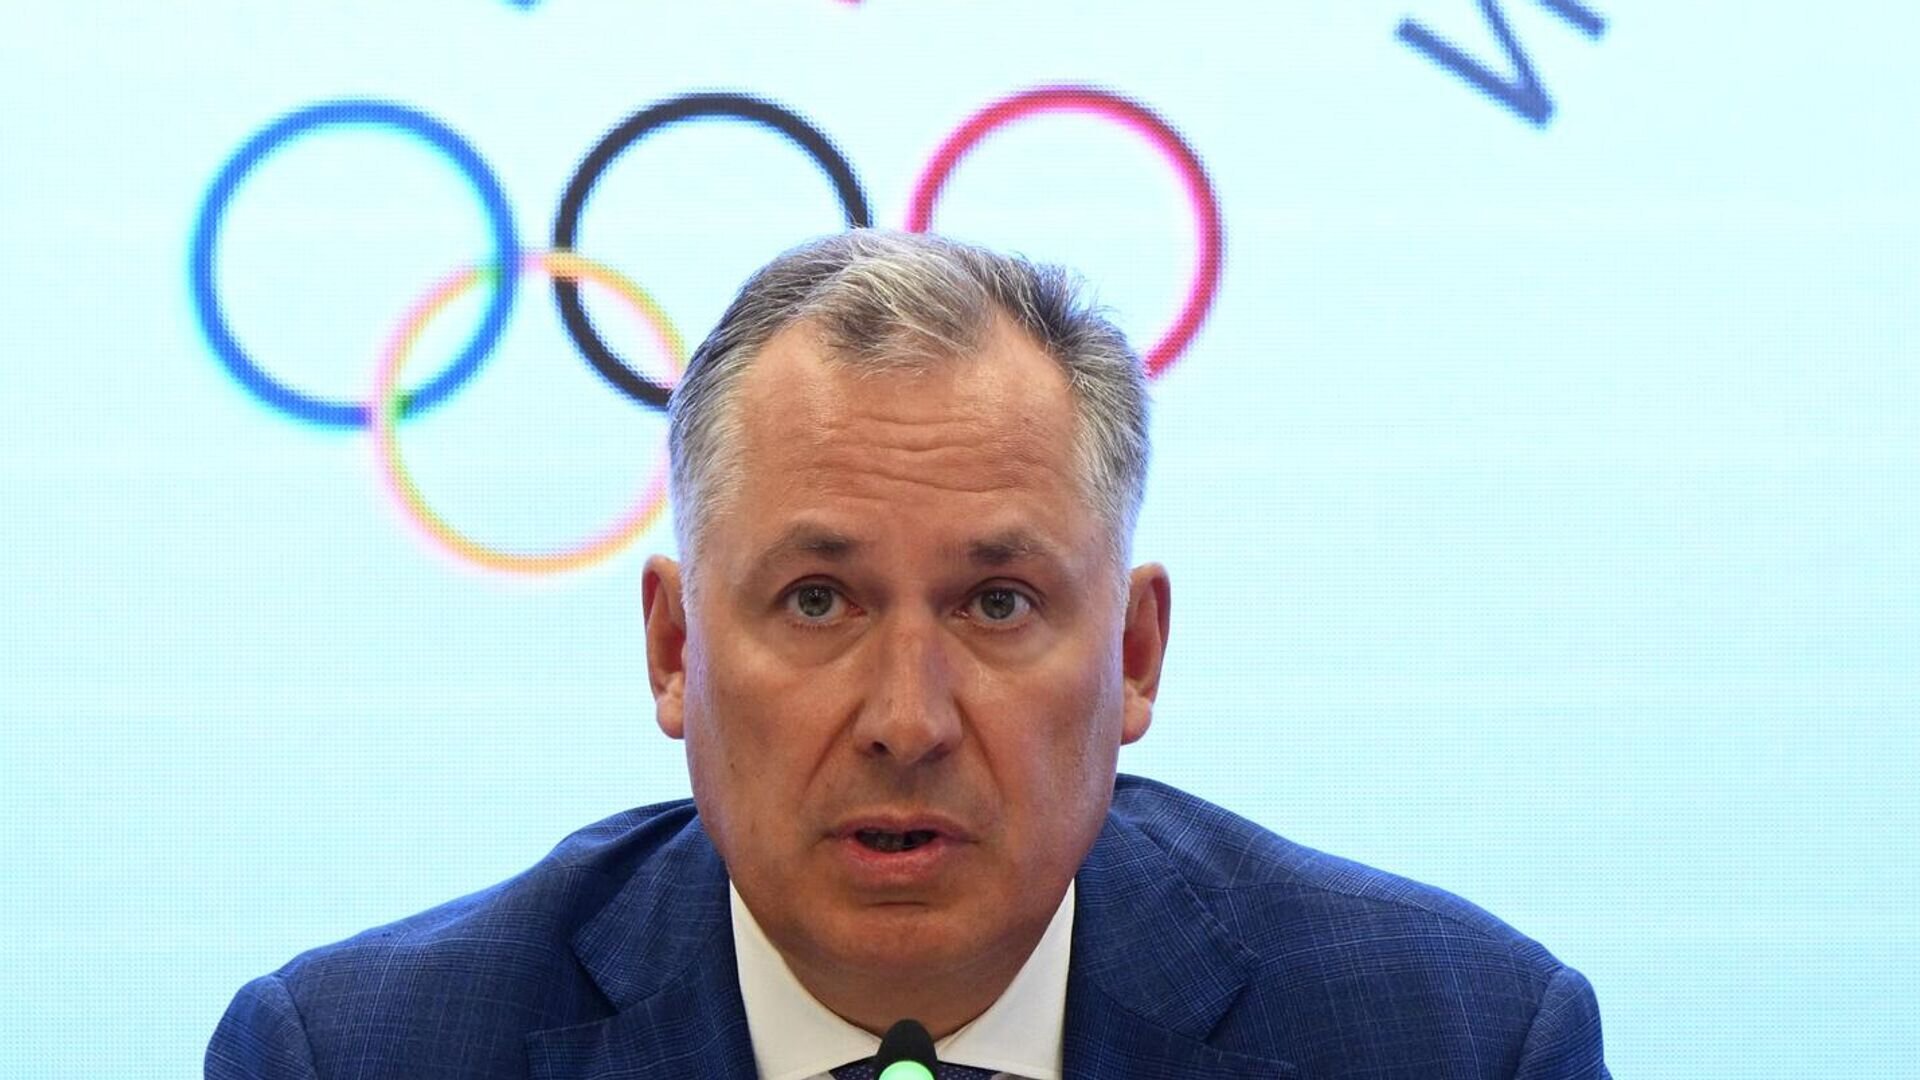 Олимпийский комитет России поддерживает тех спортсменов, которые не соглашаются на условия МОК